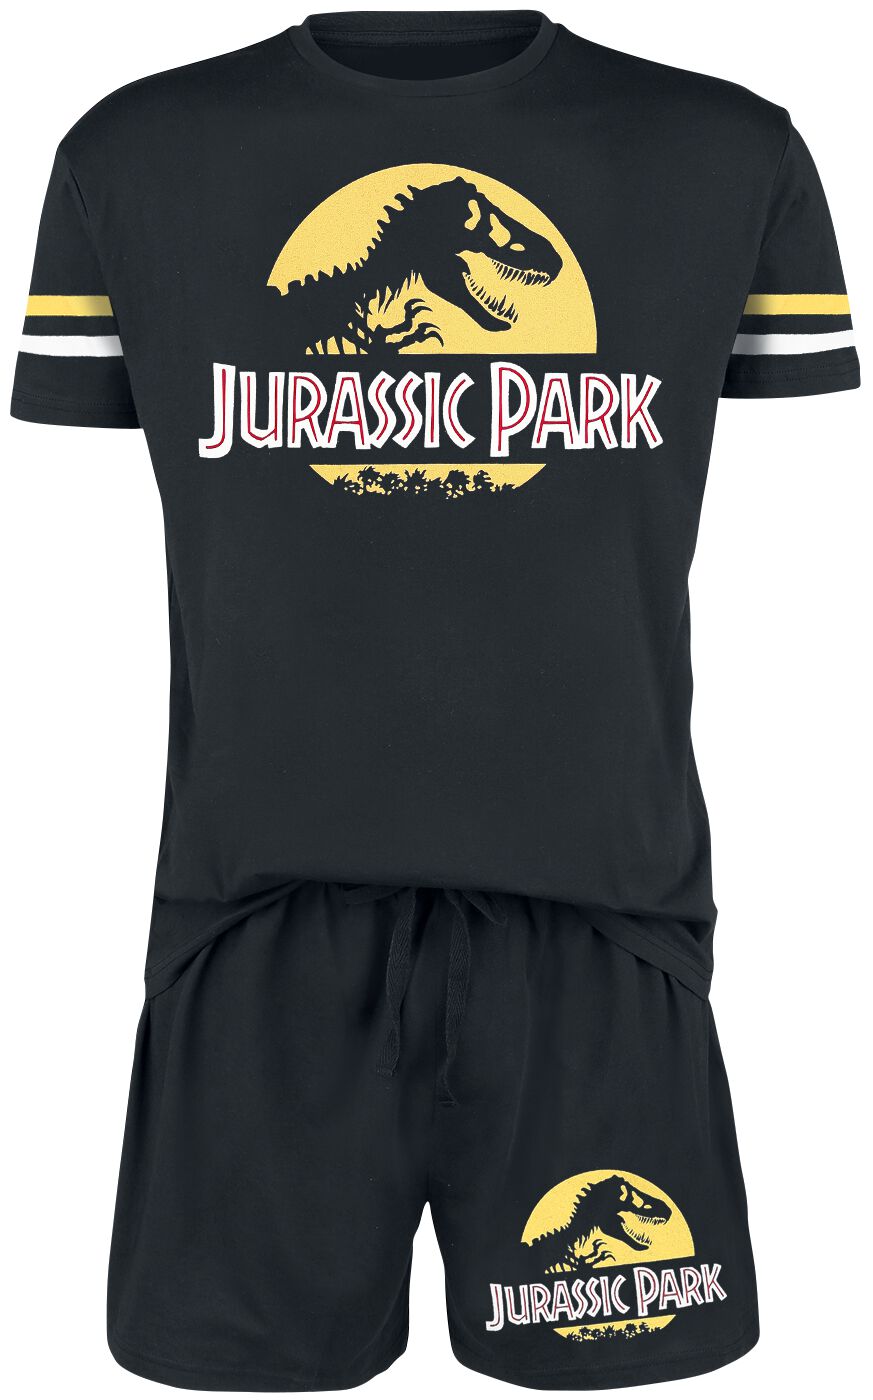 Jurassic Park Schlafanzug - Logo - S bis 3XL - für Männer - Größe S - schwarz  - EMP exklusives Merchandise!